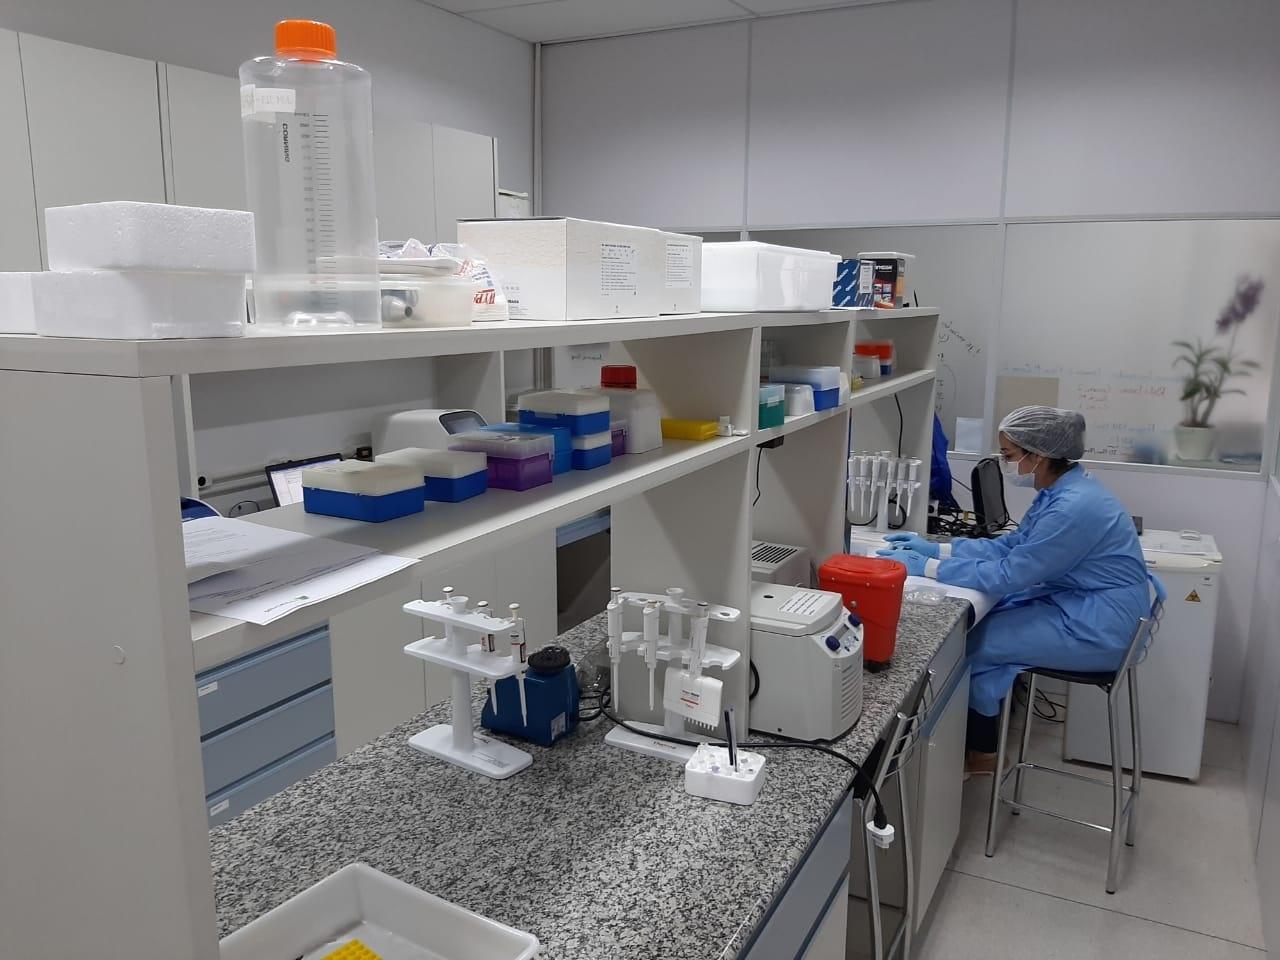 laboratorio-do-ct-vacinas-centro-de-tecnologia-em-vacinas-da-ufmg-universidade-federal-de-minas-gerais-que-estuda-vacina-contra-a-covid-19-com-insumos-totalmente-nacionais-1614371046082_v2_1280x960 Vacina totalmente brasileira contra a Covid-19 entra na 2º fase e pode ficar pronta em um ano